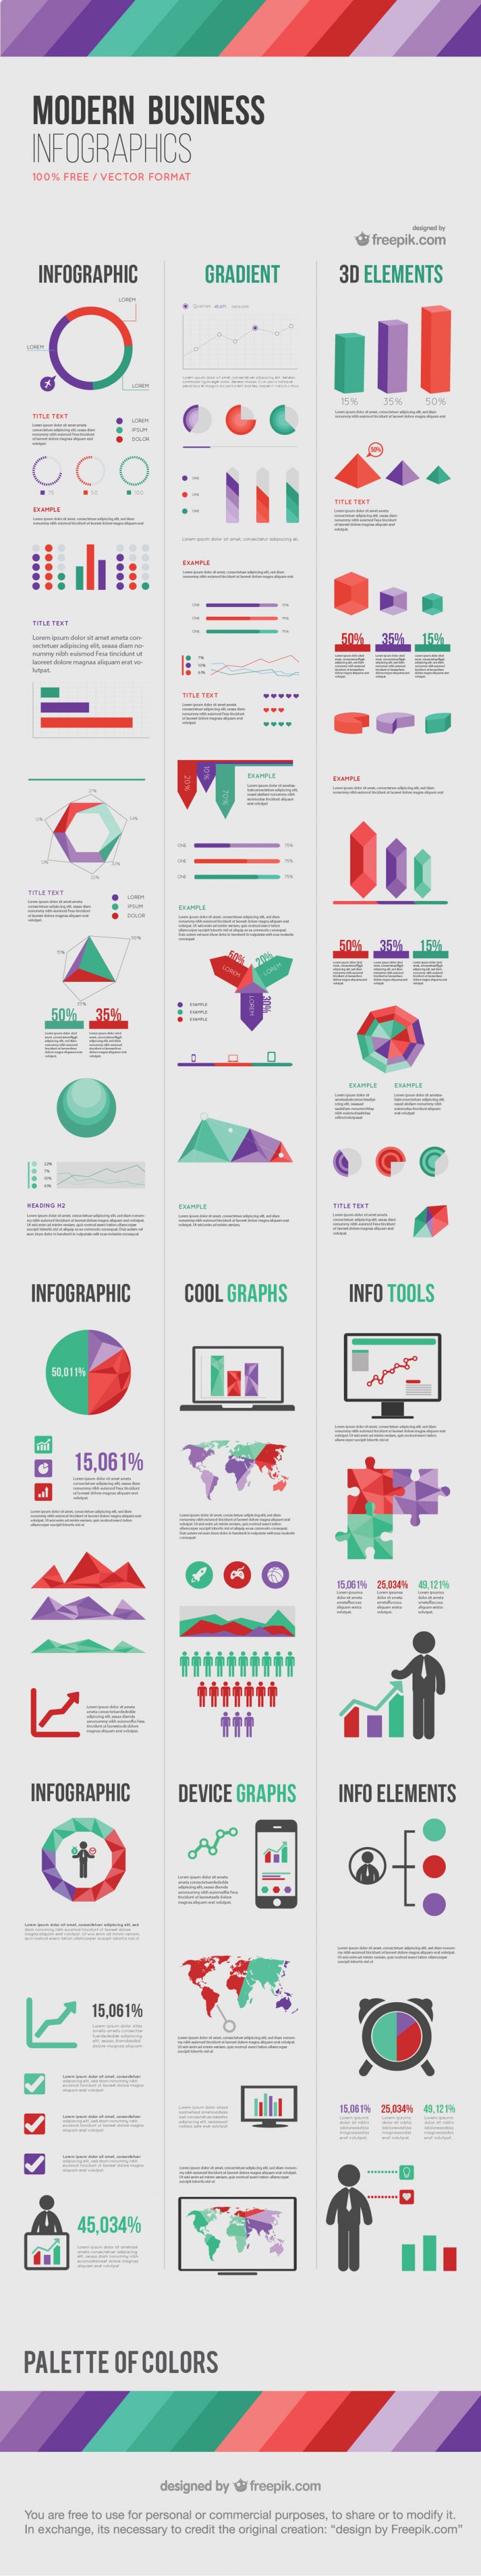 Freebie Release: элементы современного бизнеса “Инфографика”